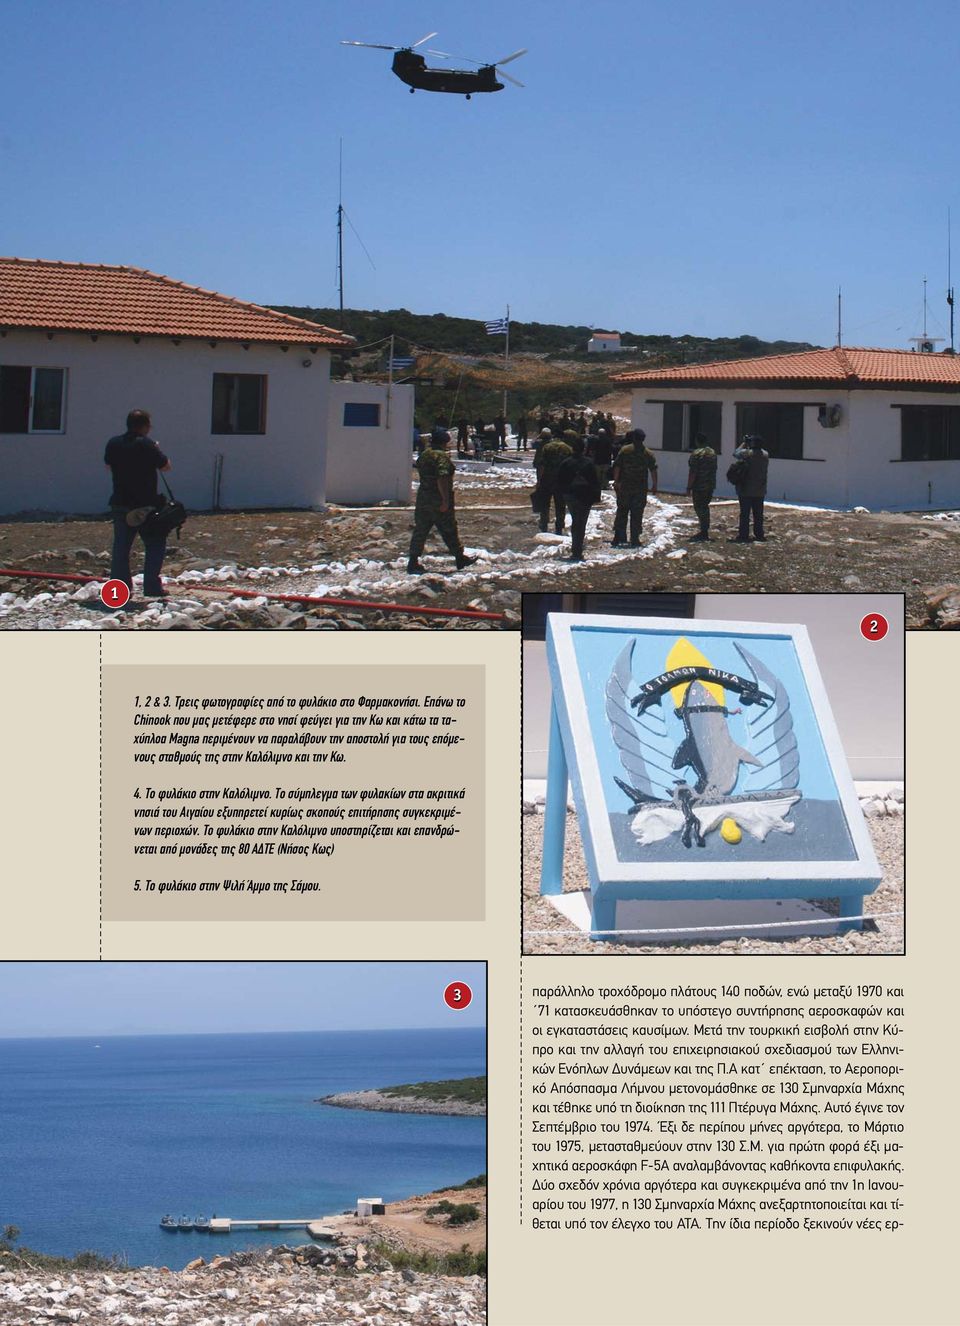 Το φυλάκιο στην Καλόλιµνο. Το σύµπλεγµα των φυλακίων στα ακριτικά νησιά του Αιγαίου εξυπηρετεί κυρίως σκοπούς επιτήρησης συγκεκριµένων περιοχών.